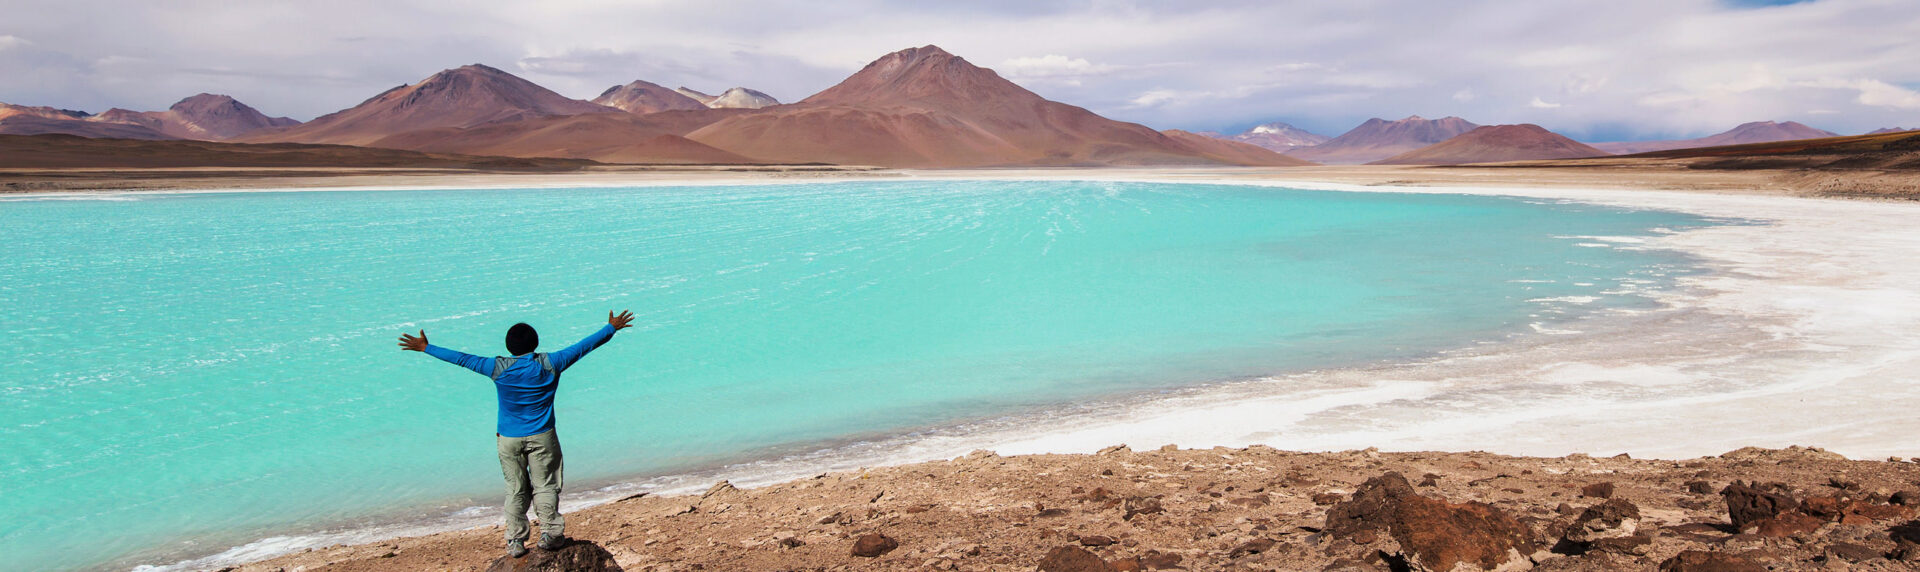 Bolivia Reizen Atacama Reisspecialist Pano1 4